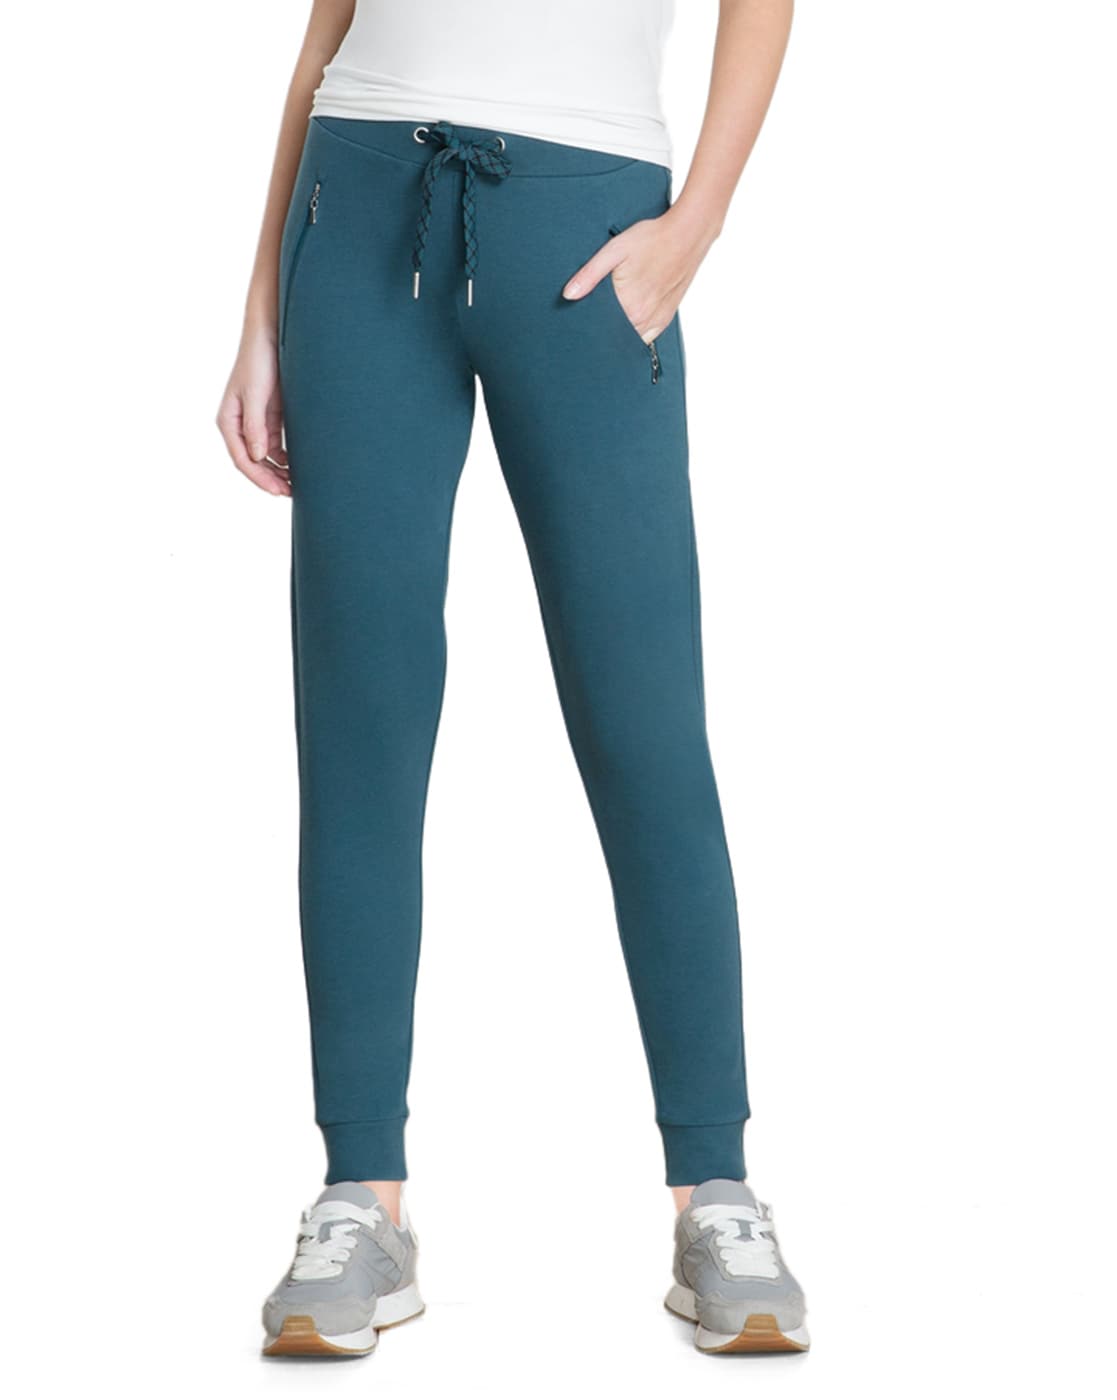 Buy Blue Track Pants for Women by VAN HEUSEN Online  Ajiocom